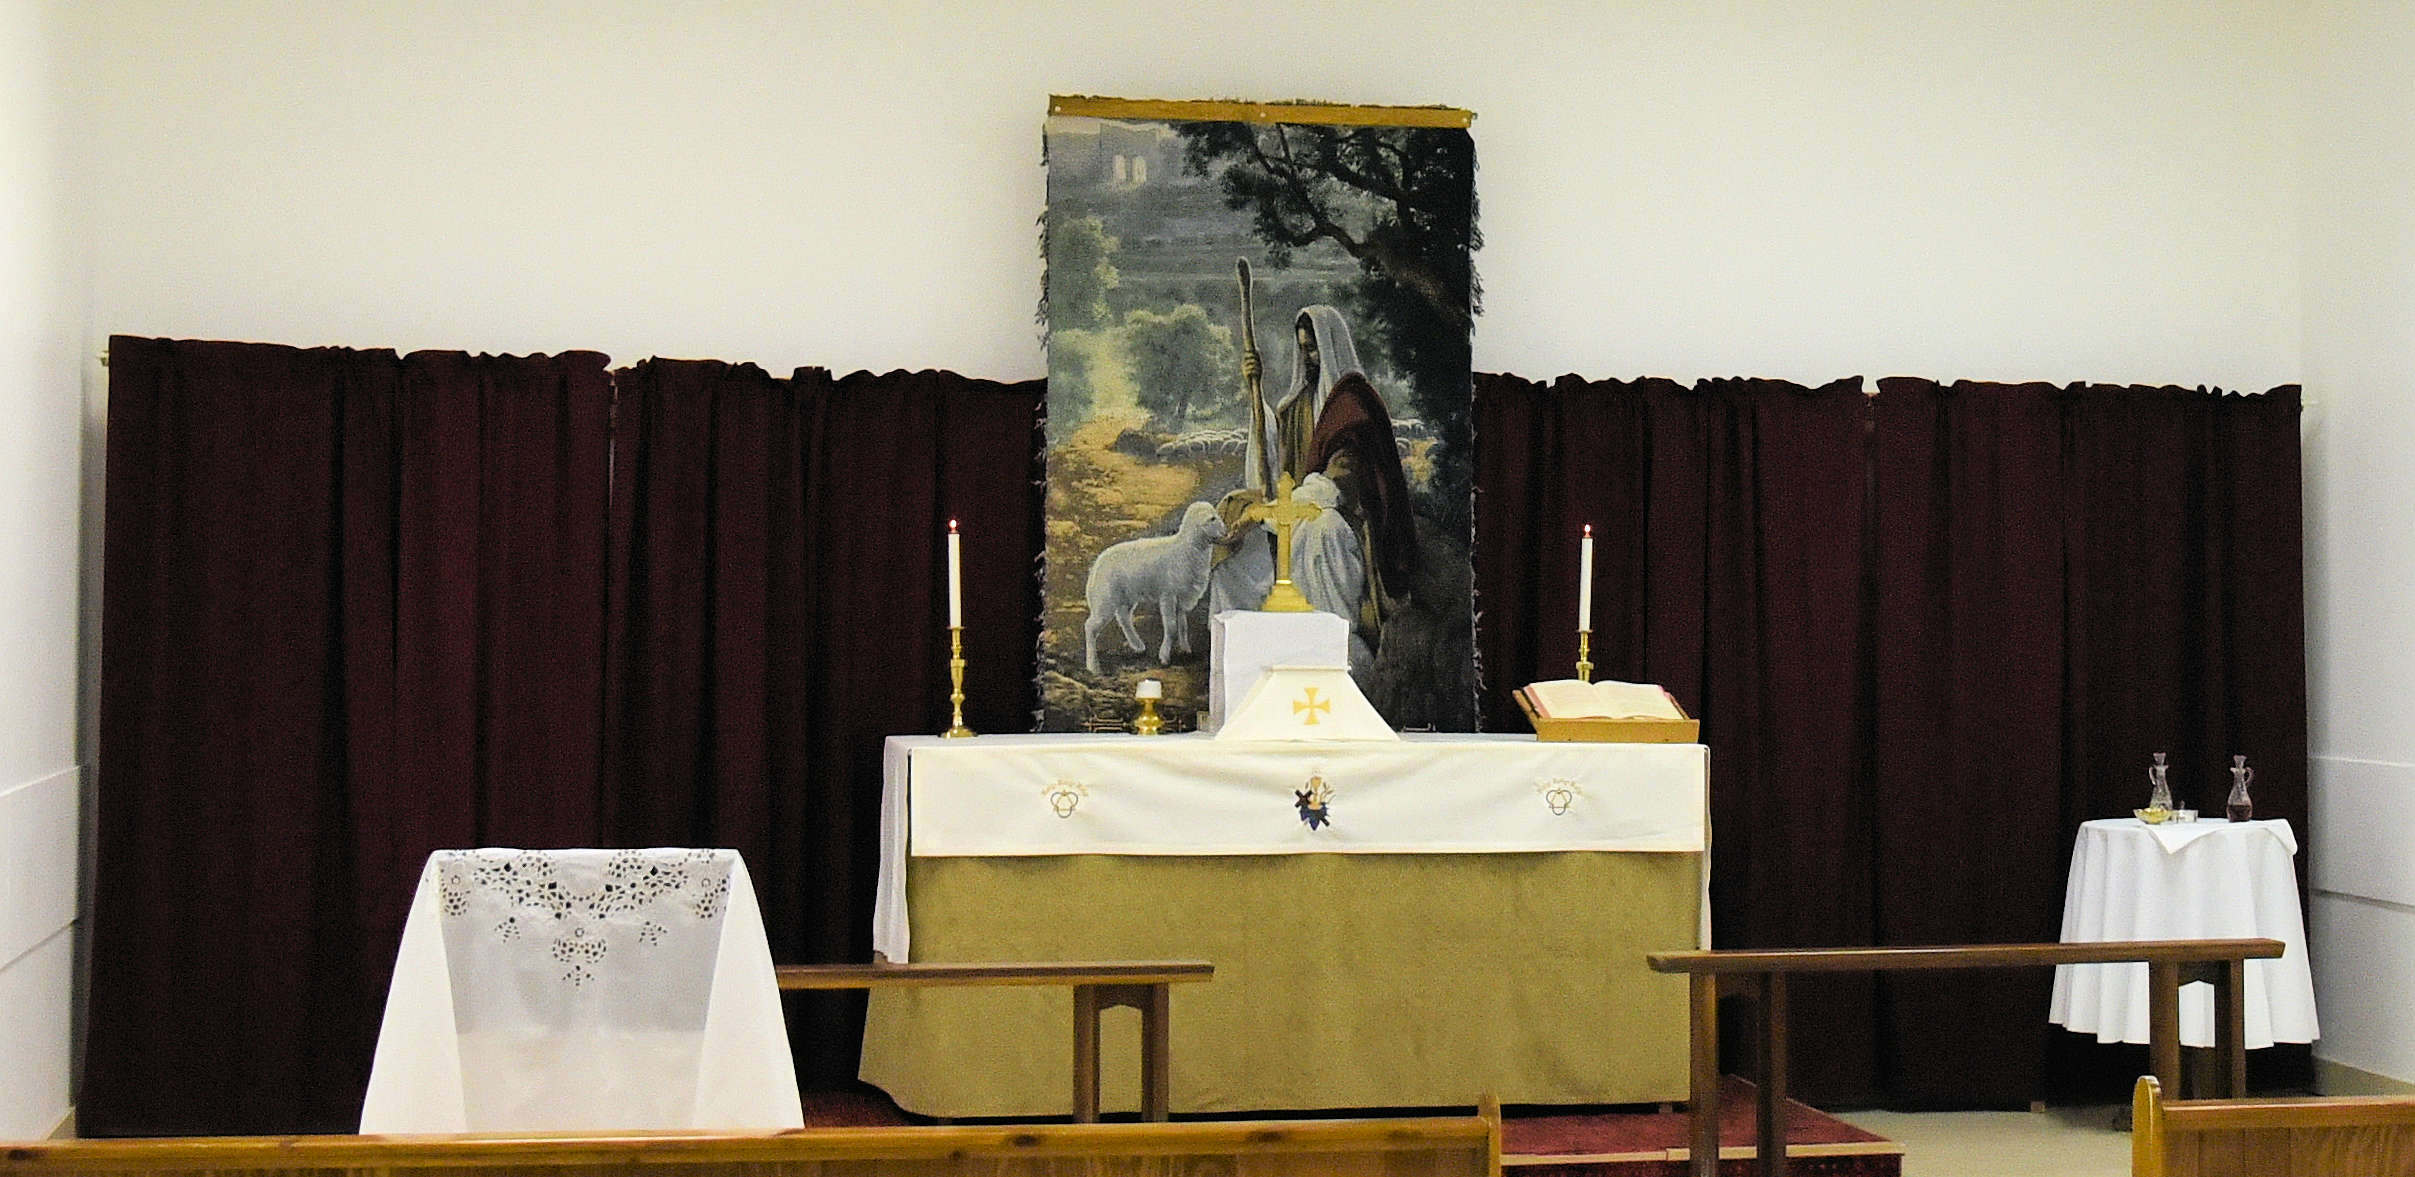 The Altar at St. Athanasius Christmas I 2016